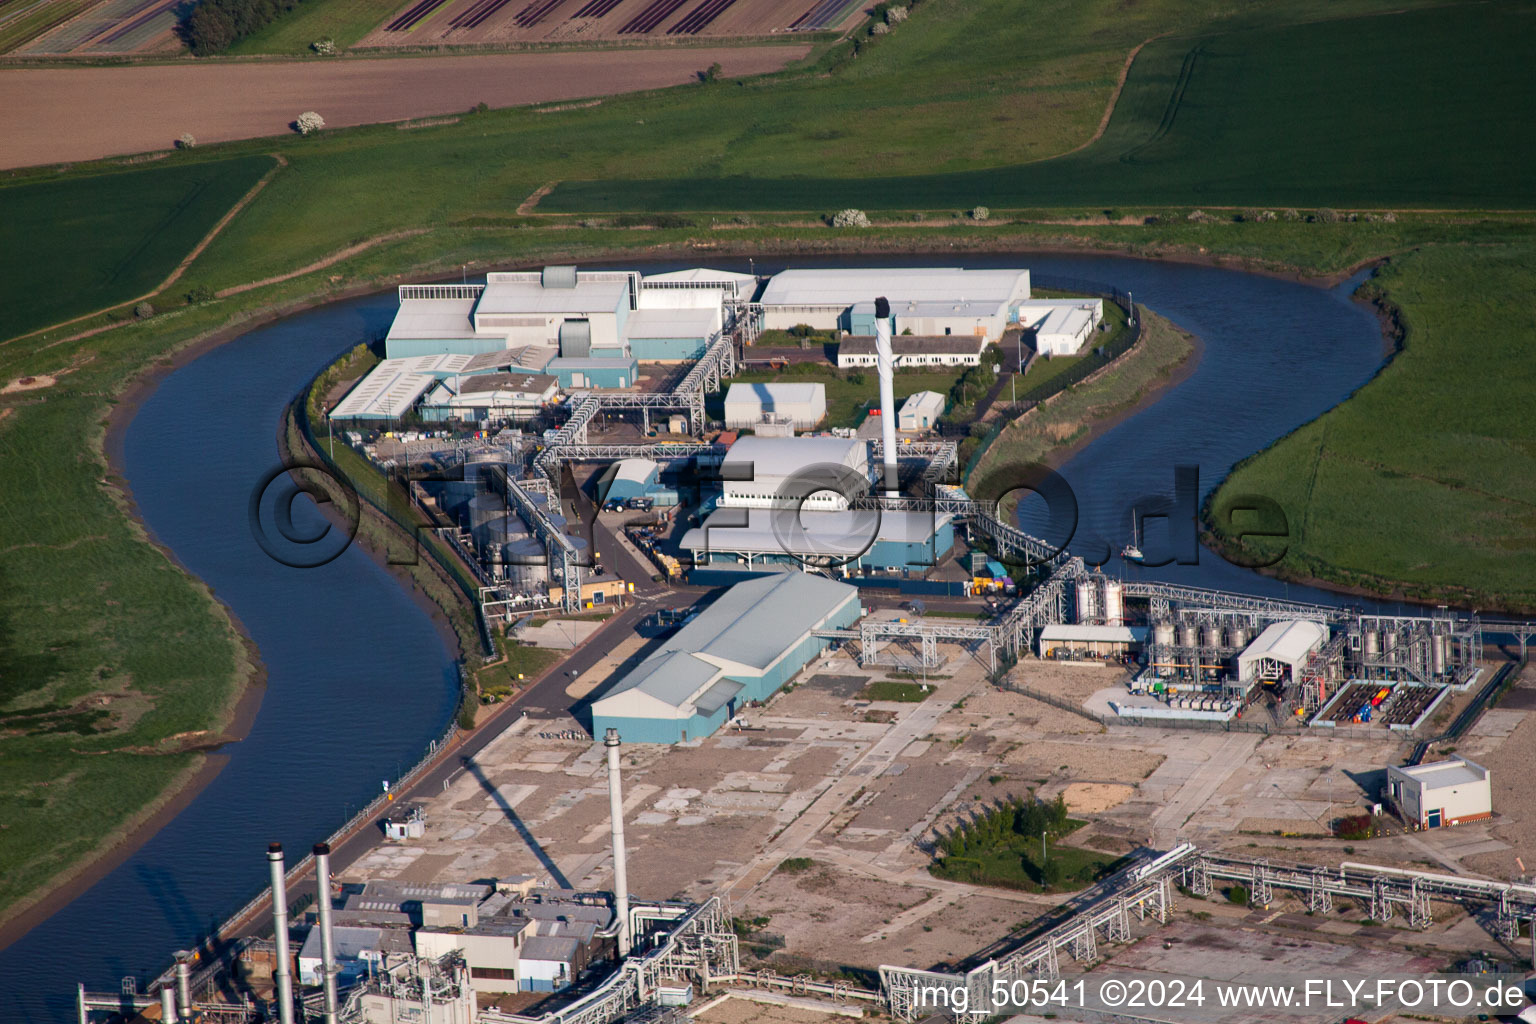 Luftbild von Gebäude und Produktionshallen auf dem Werksgelände des Chemieproduzenten Pfizer Ltd in Sandwich in England, Vereinigtes Königreich, Großbritanien